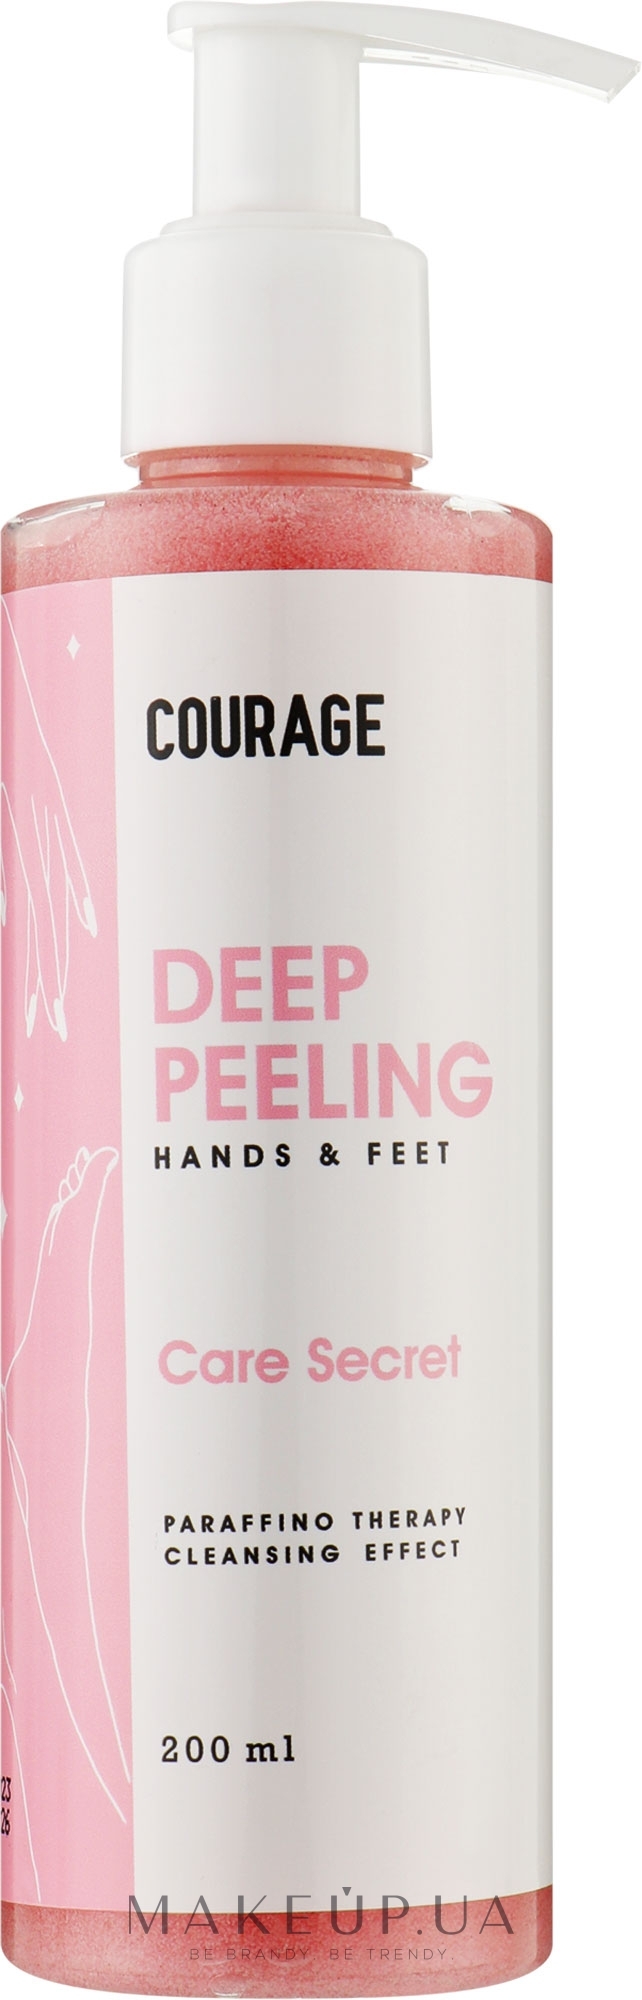 Пілінг-ексфоліант для рук і стоп - Courage Deep Peeling Hands & Feet — фото 200ml